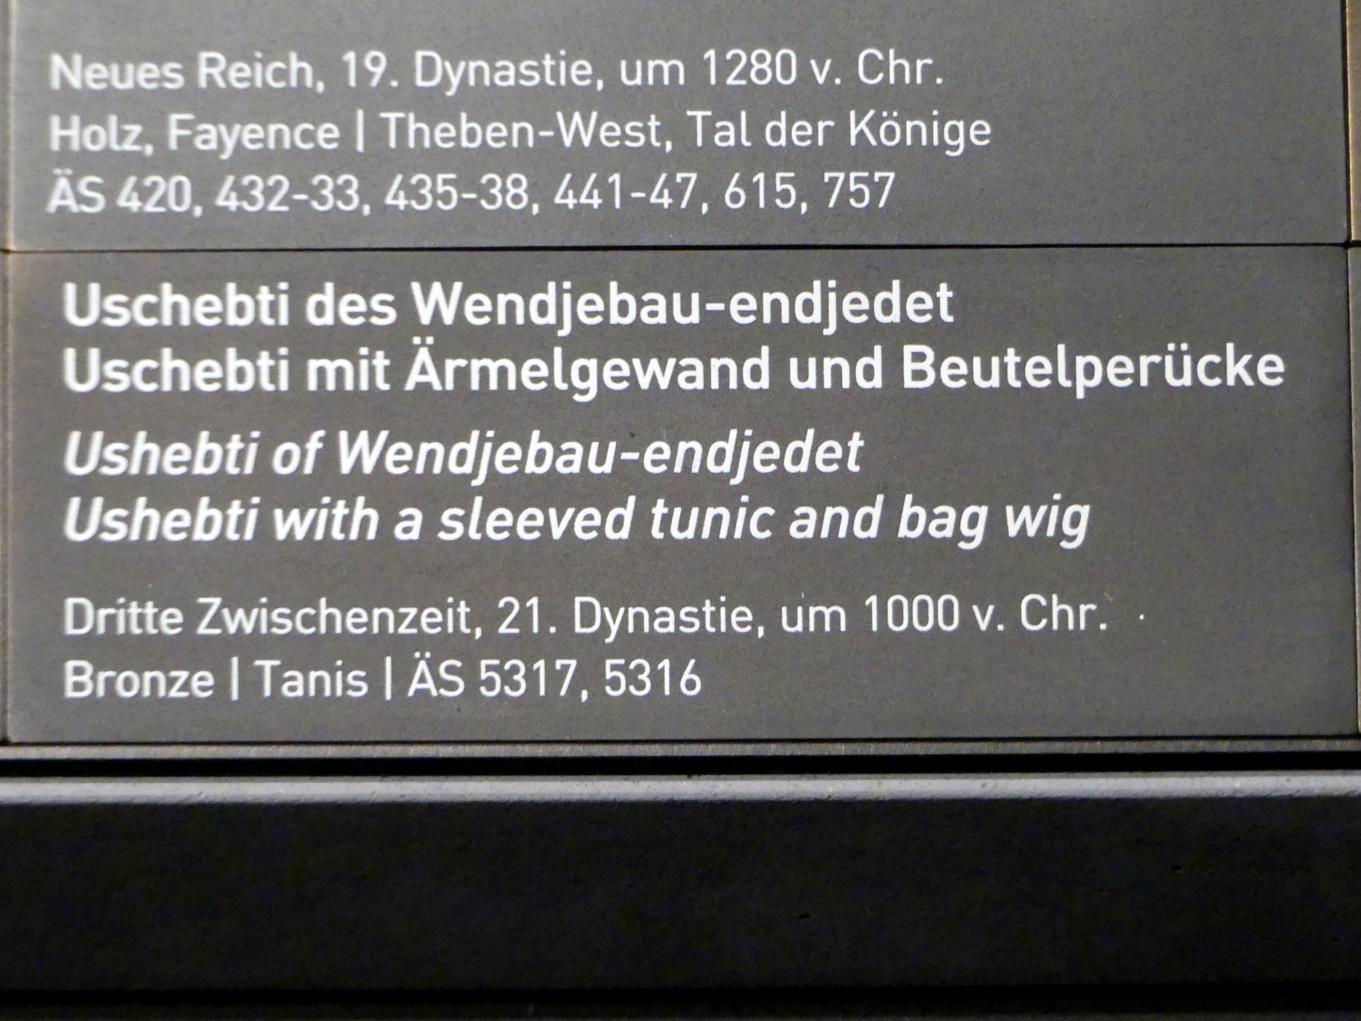 Uschebti des Wendjebau-endjedet, 21. Dynastie, 835 - 711 v. Chr., 1000 v. Chr., Bild 2/2